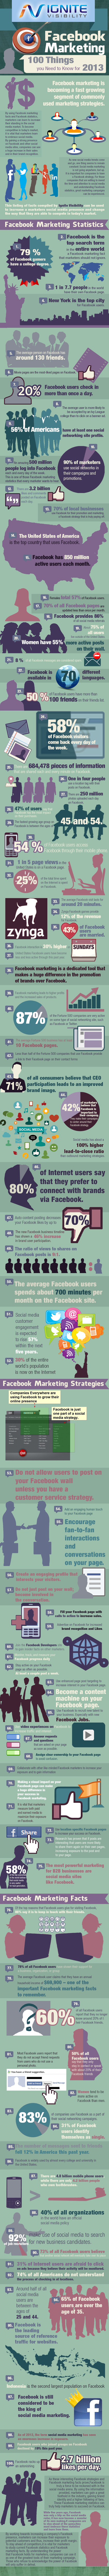 “Facebook’ta Pazarlama” 2013 Yılında Bilmeniz Gereken 100 Madde